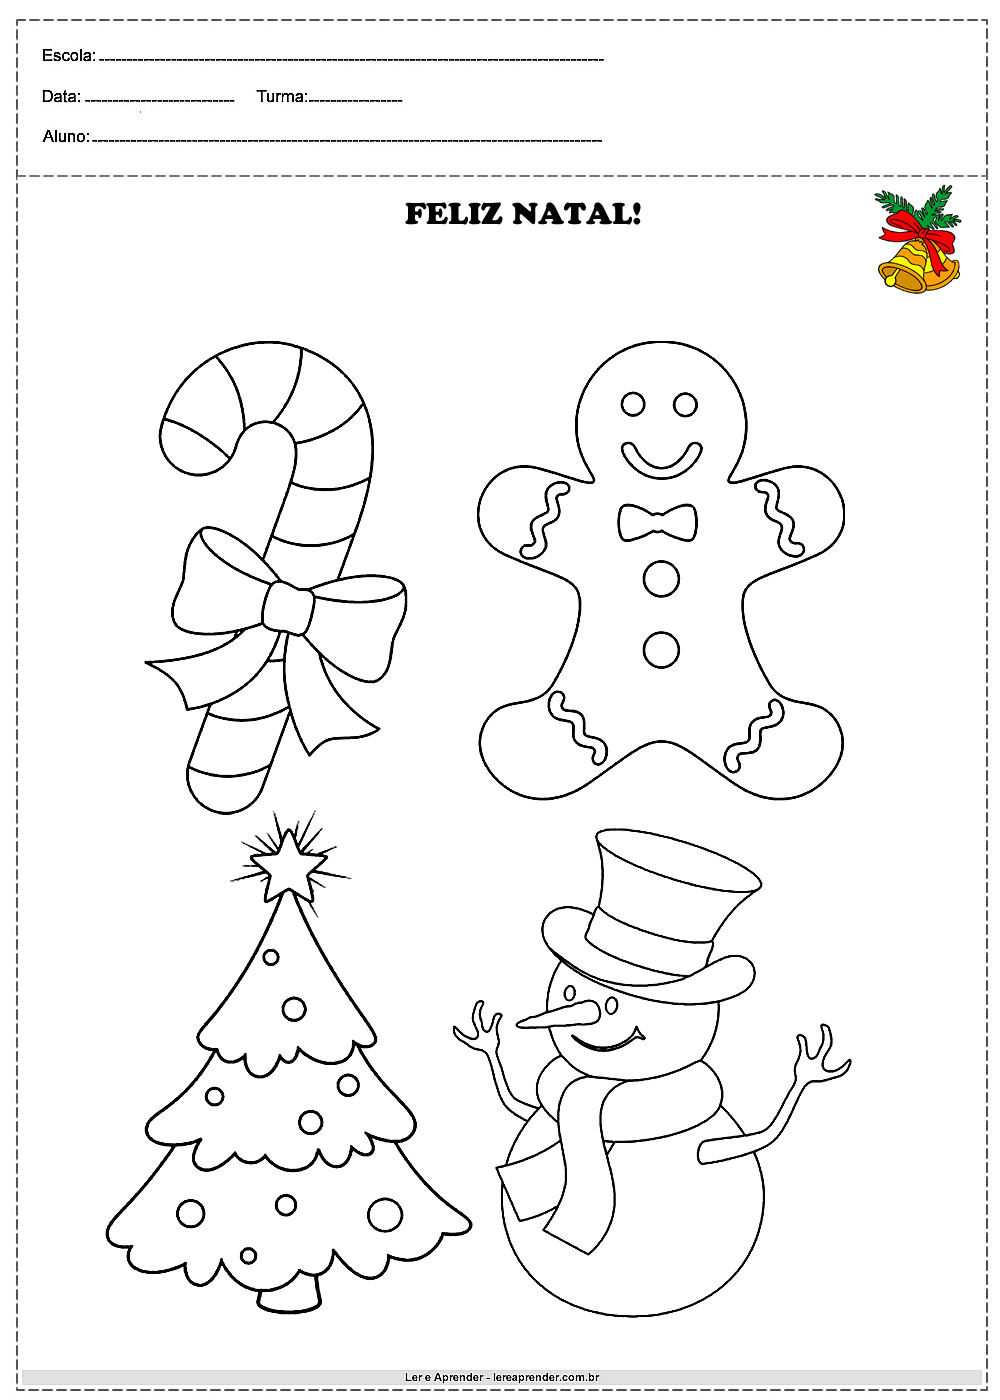 Desenho de natal - Para colorir e imprimir - Atividades Educativas